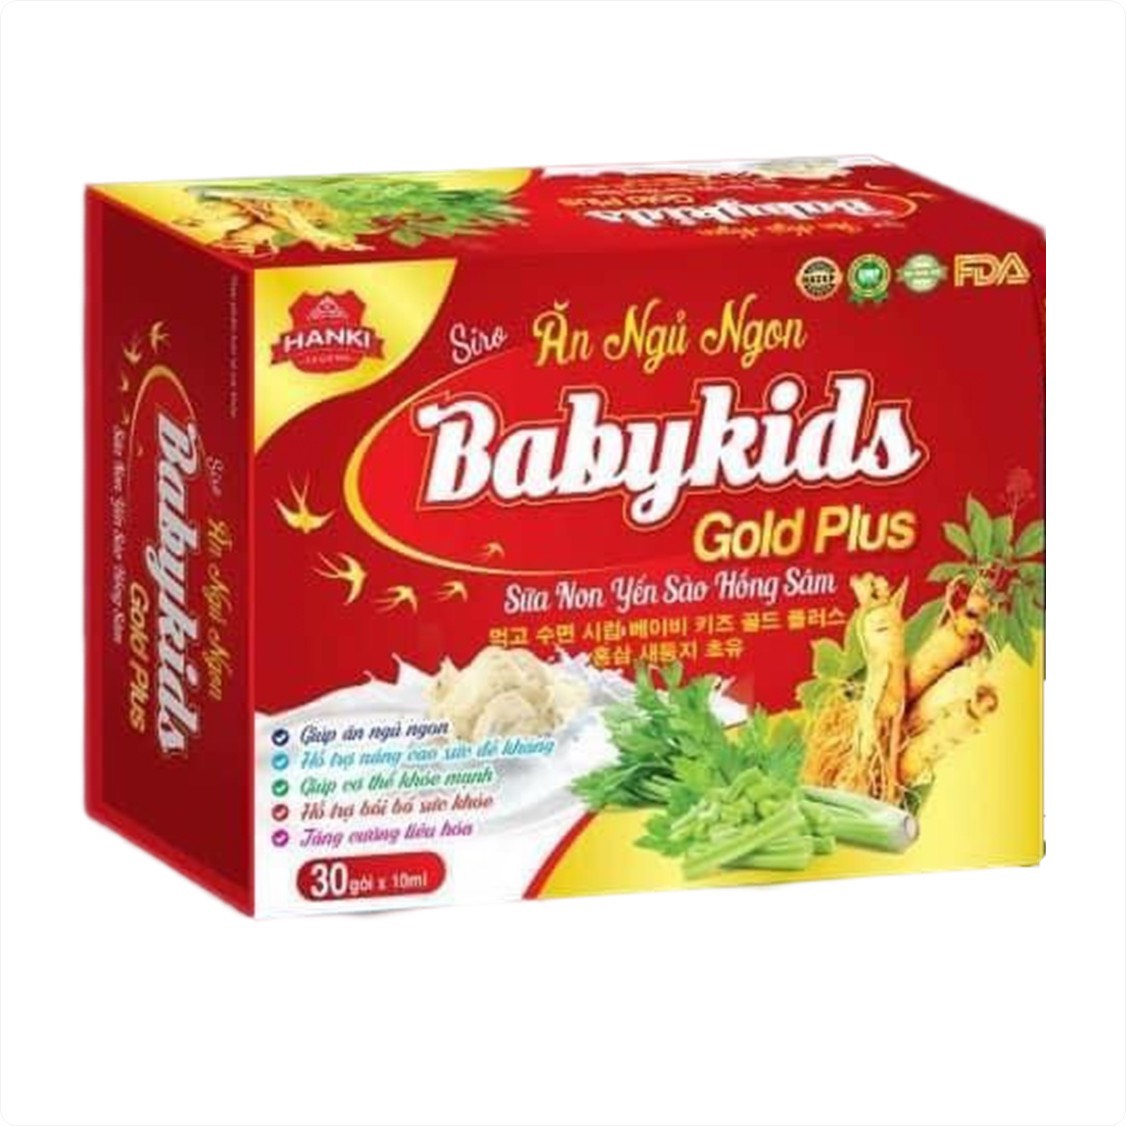 Siro Ăn Ngủ Ngon Babykids Gold Plus Sữa Non Yến Sào Hồng Sâm Giúp Ăn Ngủ Ngon, Hỗ Trợ Bồi Bổ Sức Khỏe, Tăng Cường Sức Đề Kháng - 30 gói - Dược Phẩm Bách Lộc